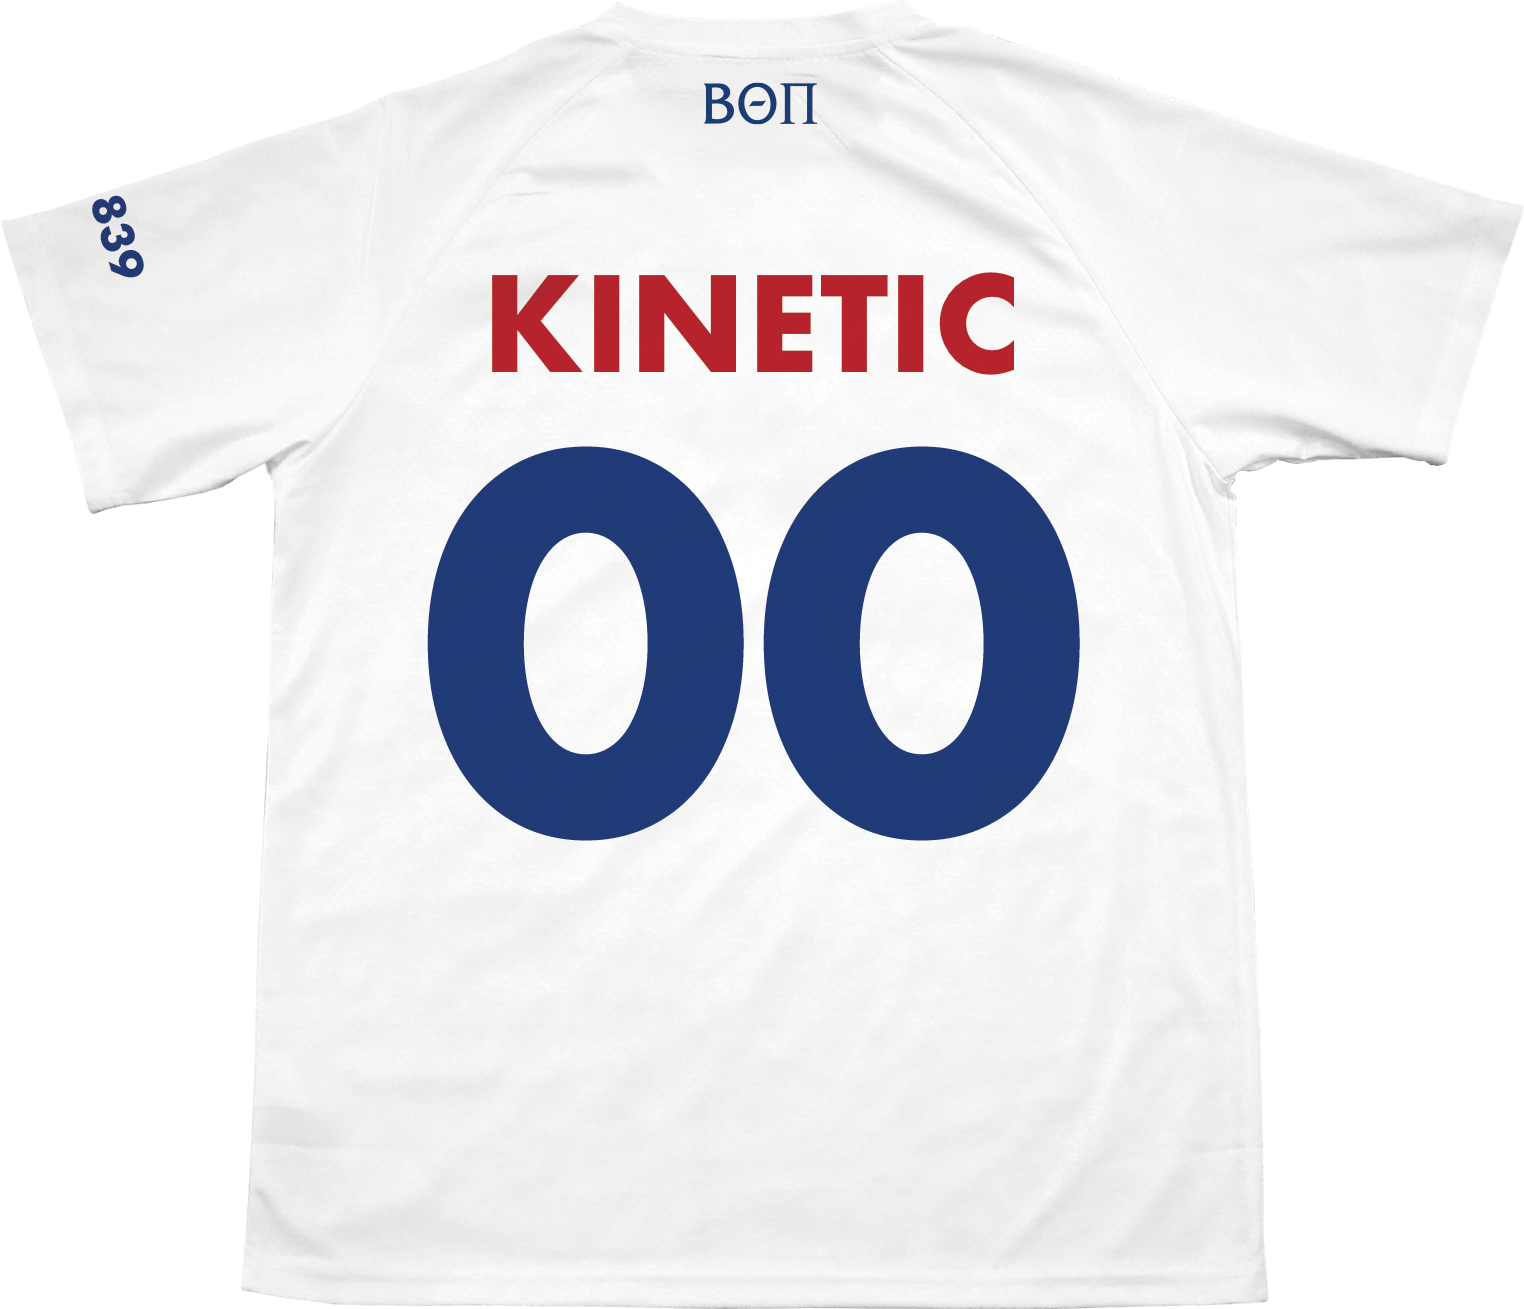 Beta Theta Pi - Home Team Soccer Jersey - Kinetic Society